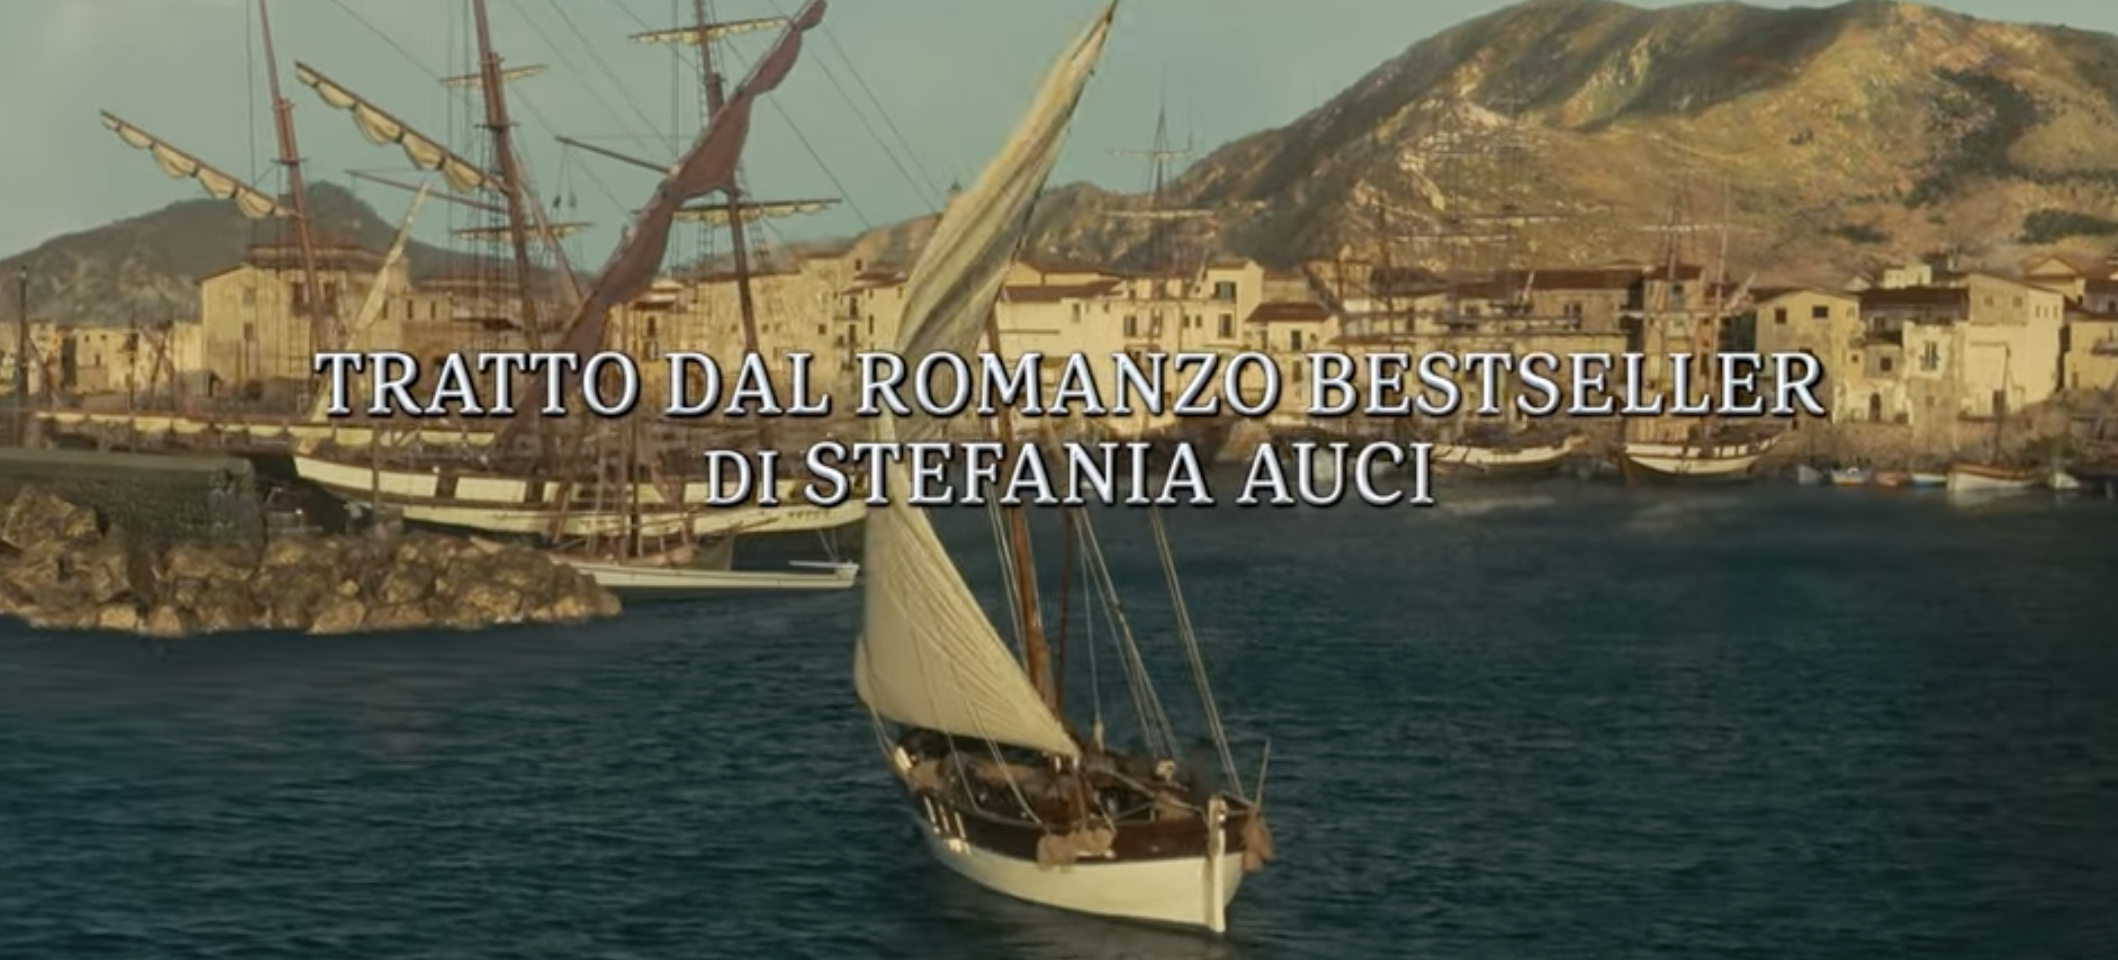 Arriva il trailer de ‘I leoni di Sicilia’, la serie tv girata anche a Favignana, Trapani e Marsala